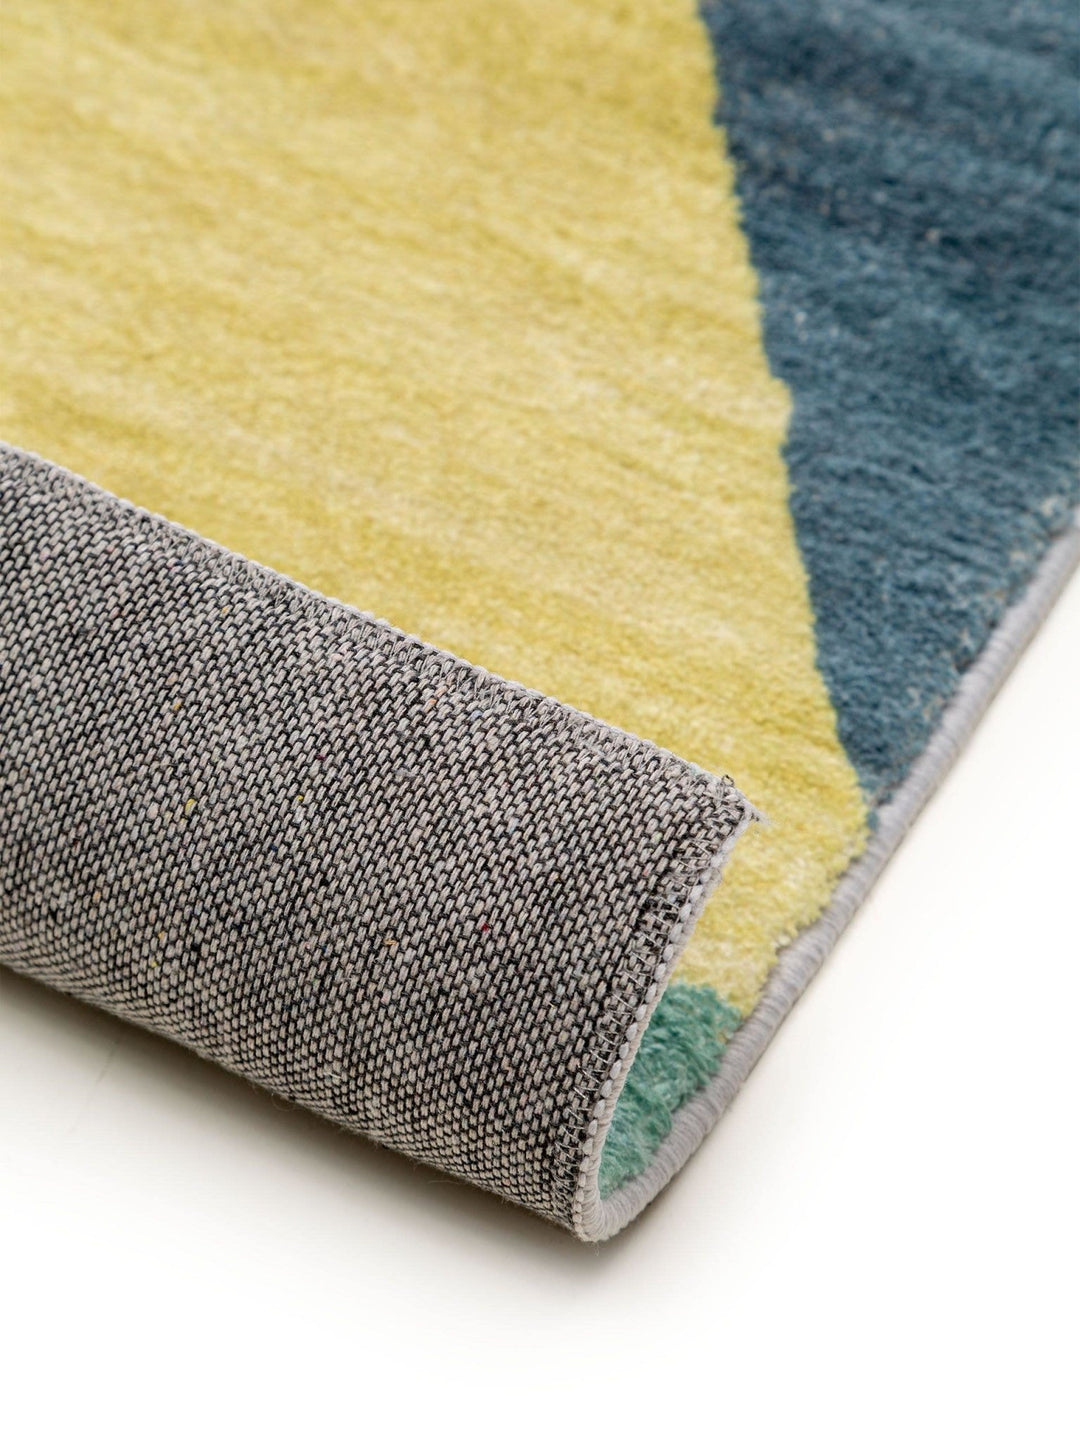 Teppich Mara Multicolor - benuta TRENDS - RugDreams®